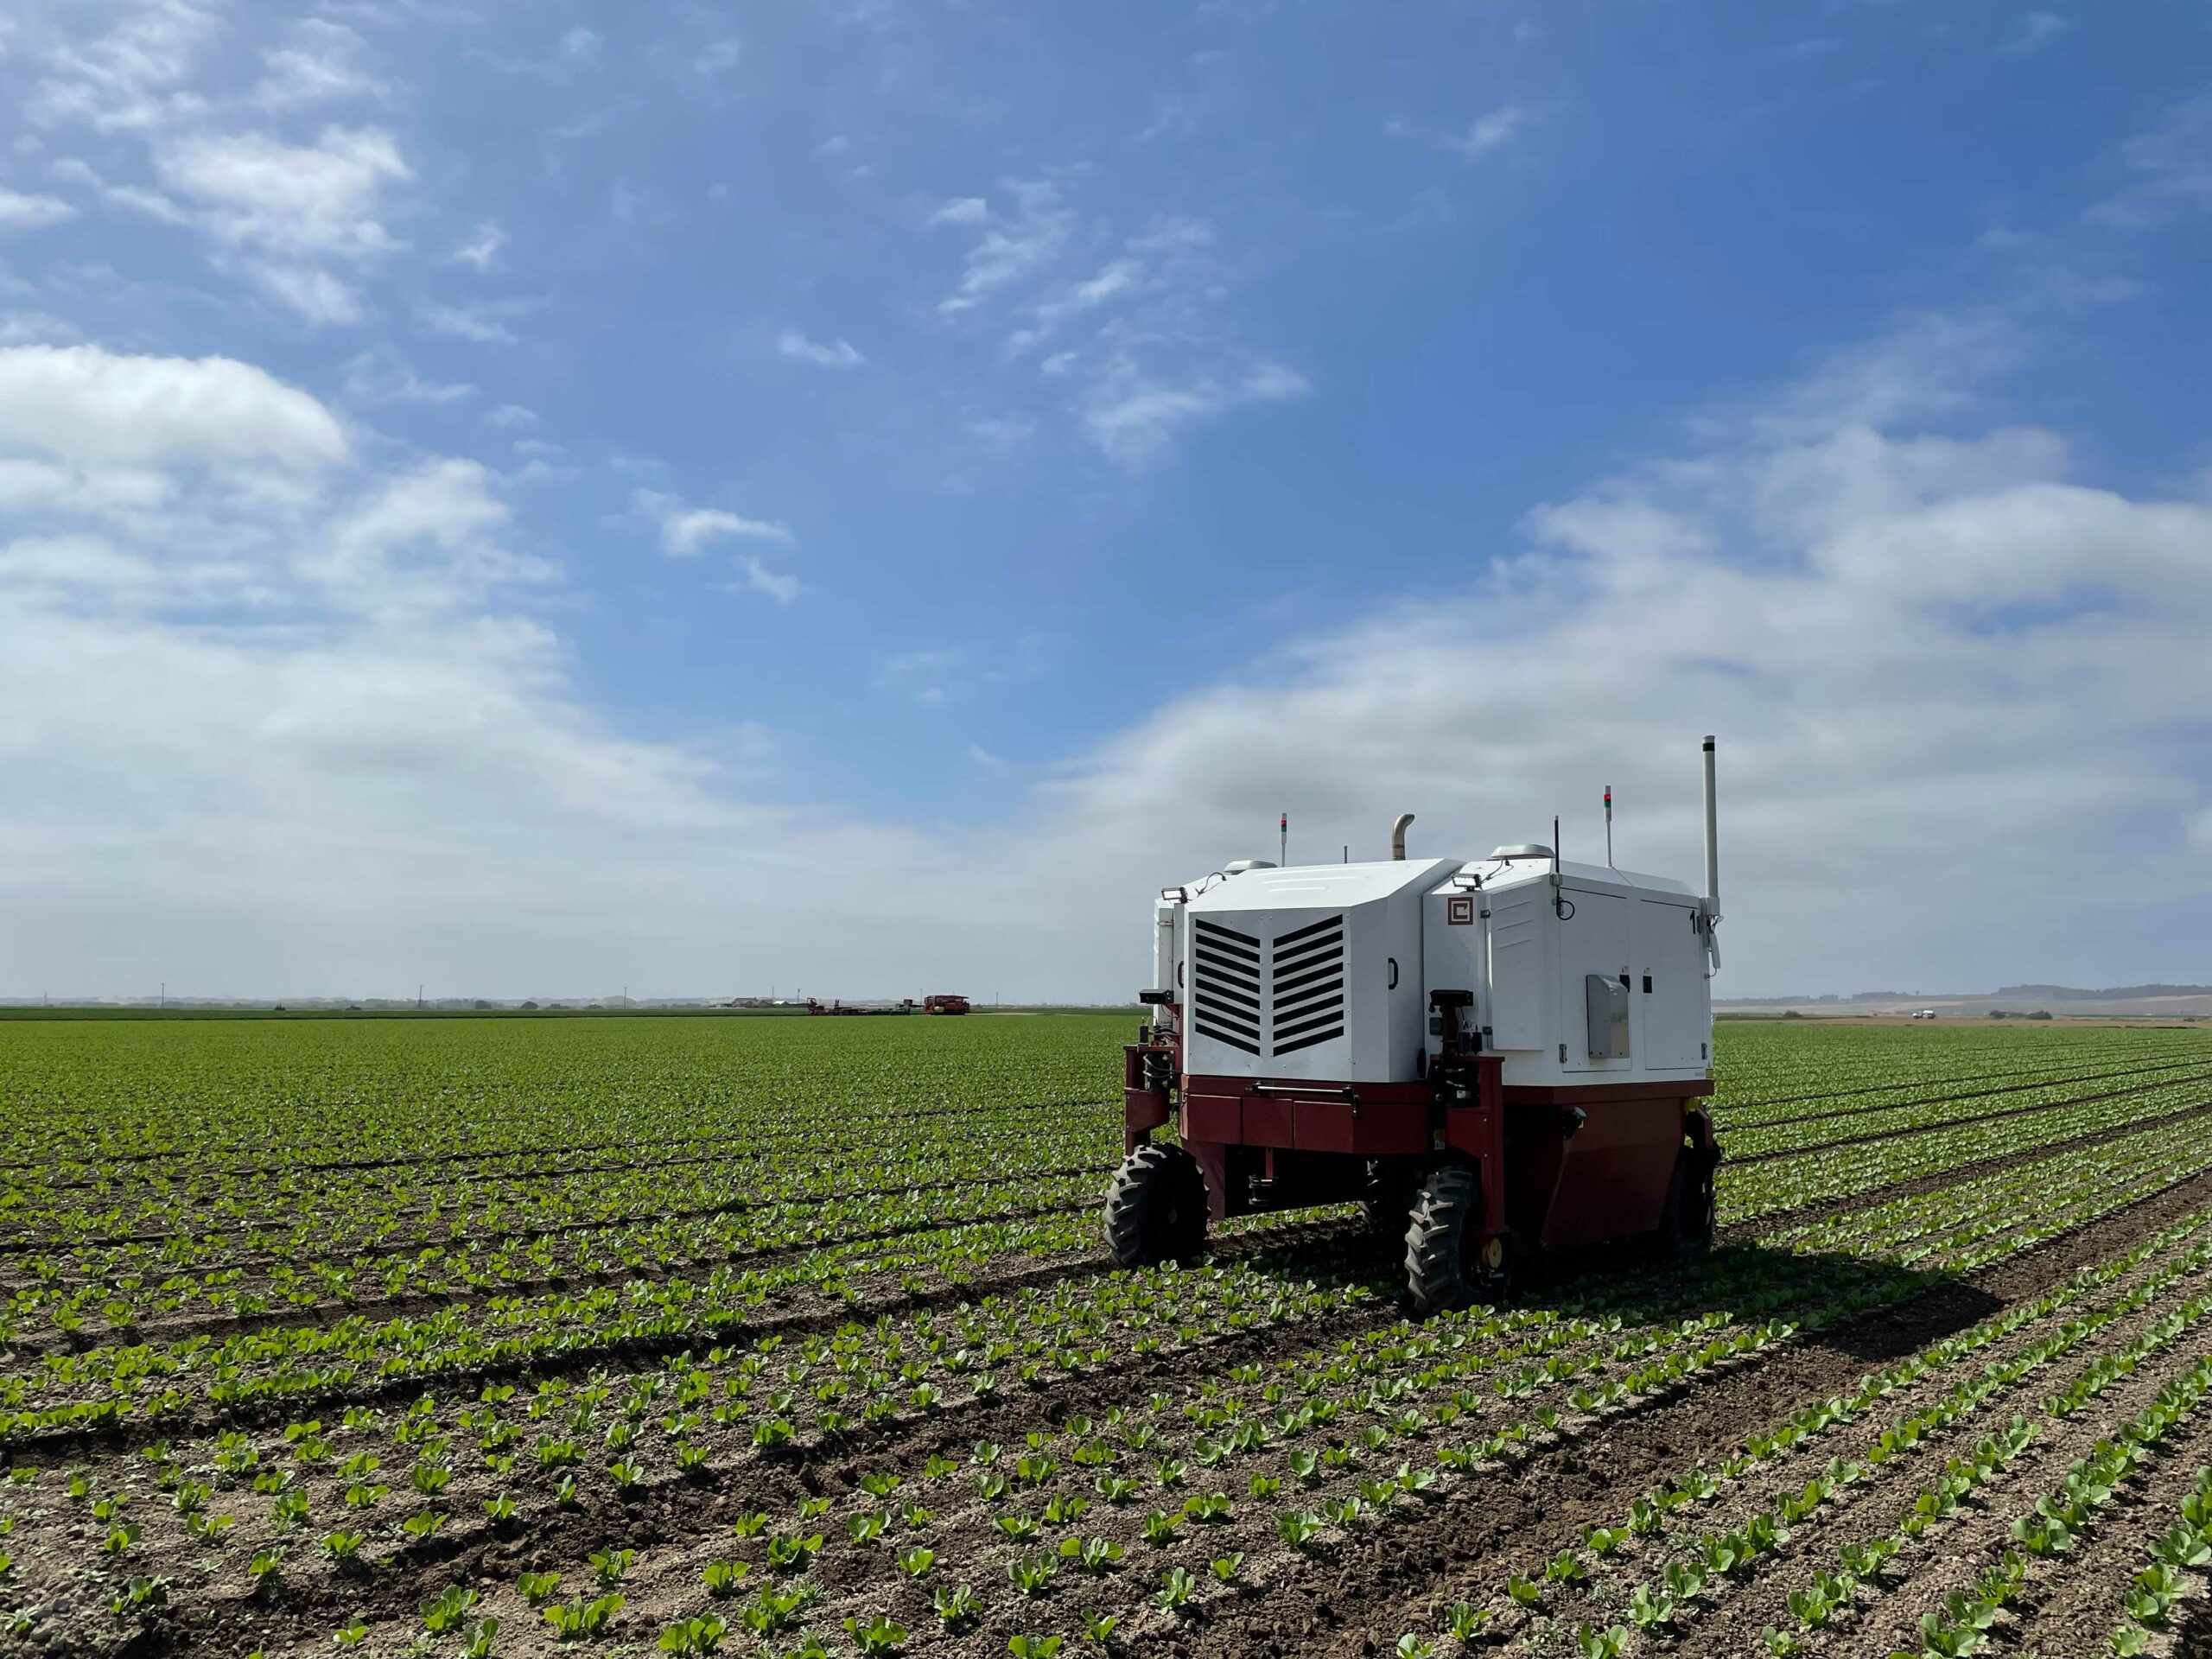 Vai ravēšanas roboti mainīs lauksaimniecību?